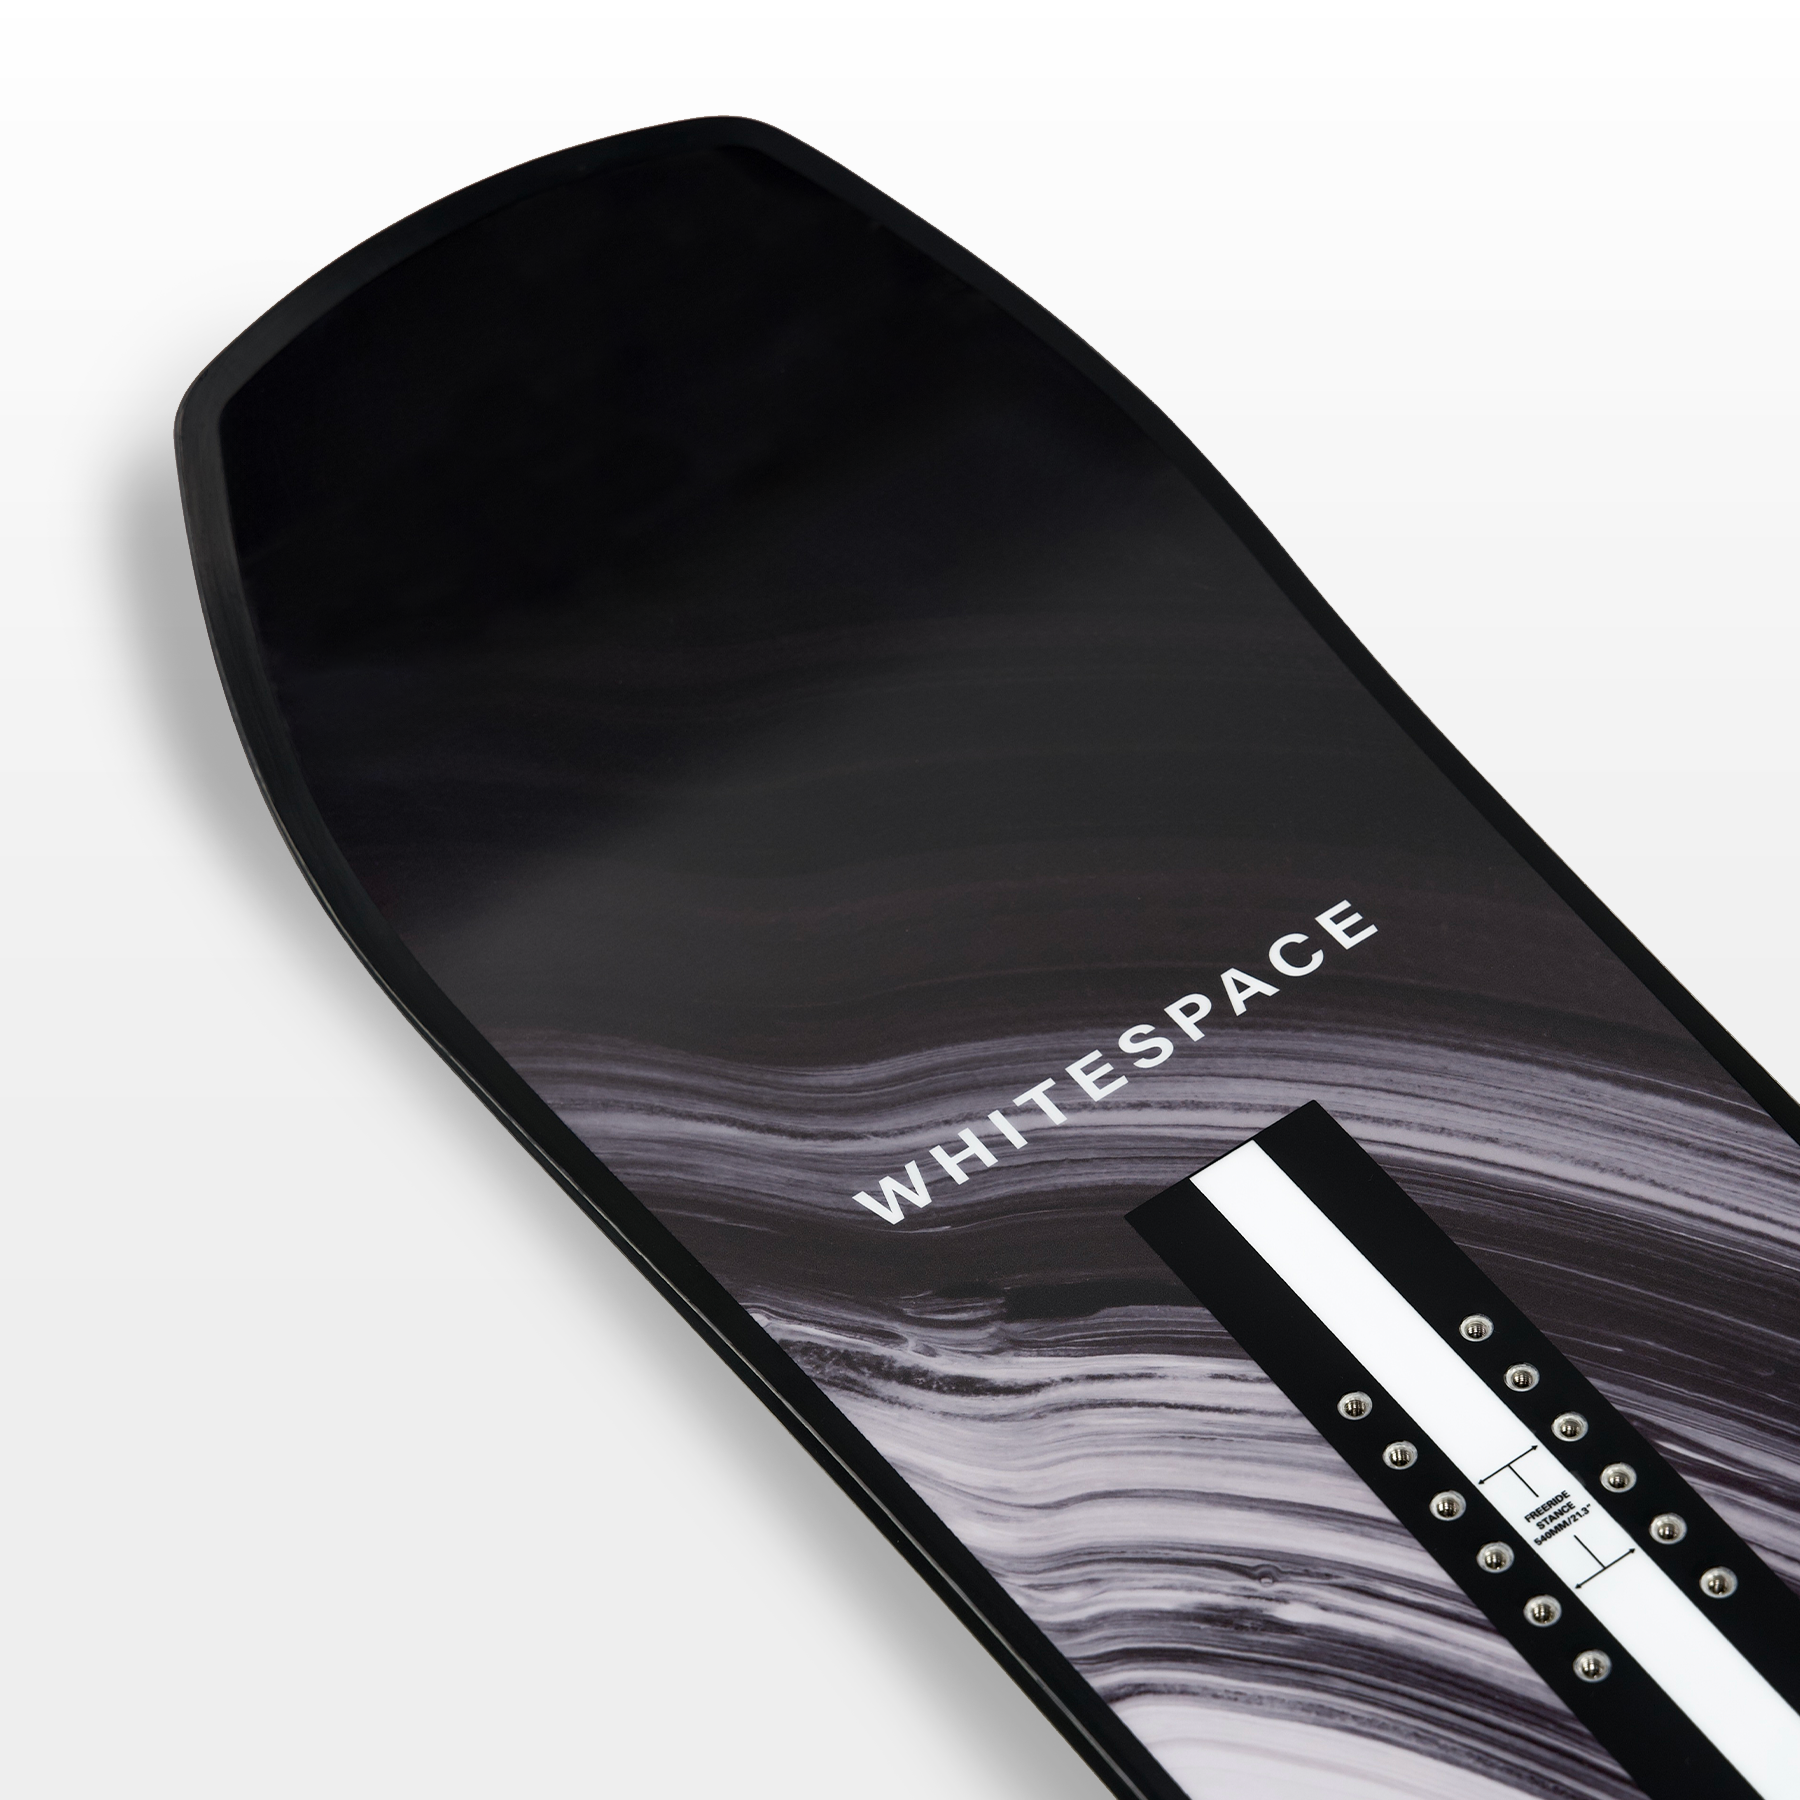 Shaun White Launches New Snowboard Brand, 'WHITESPACE